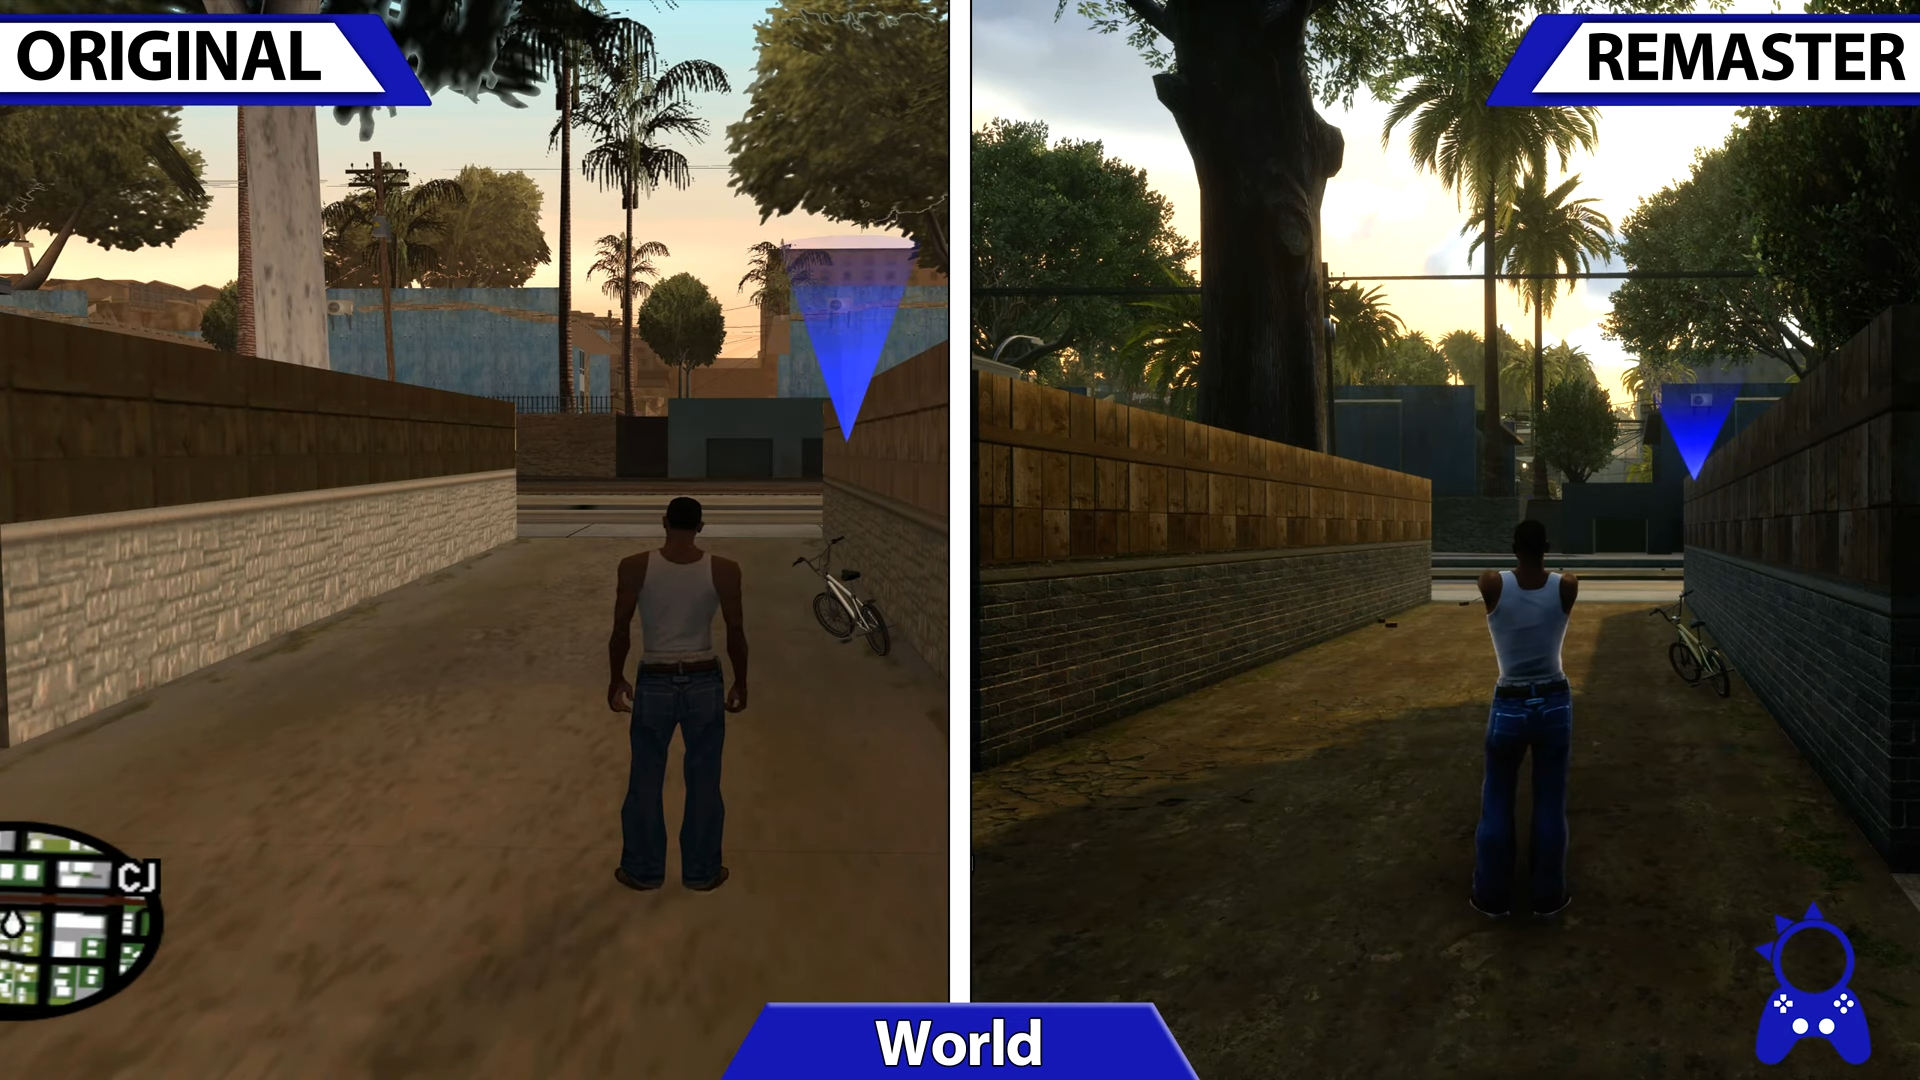 Grand Theft Auto San Andreas - analisi comparativa